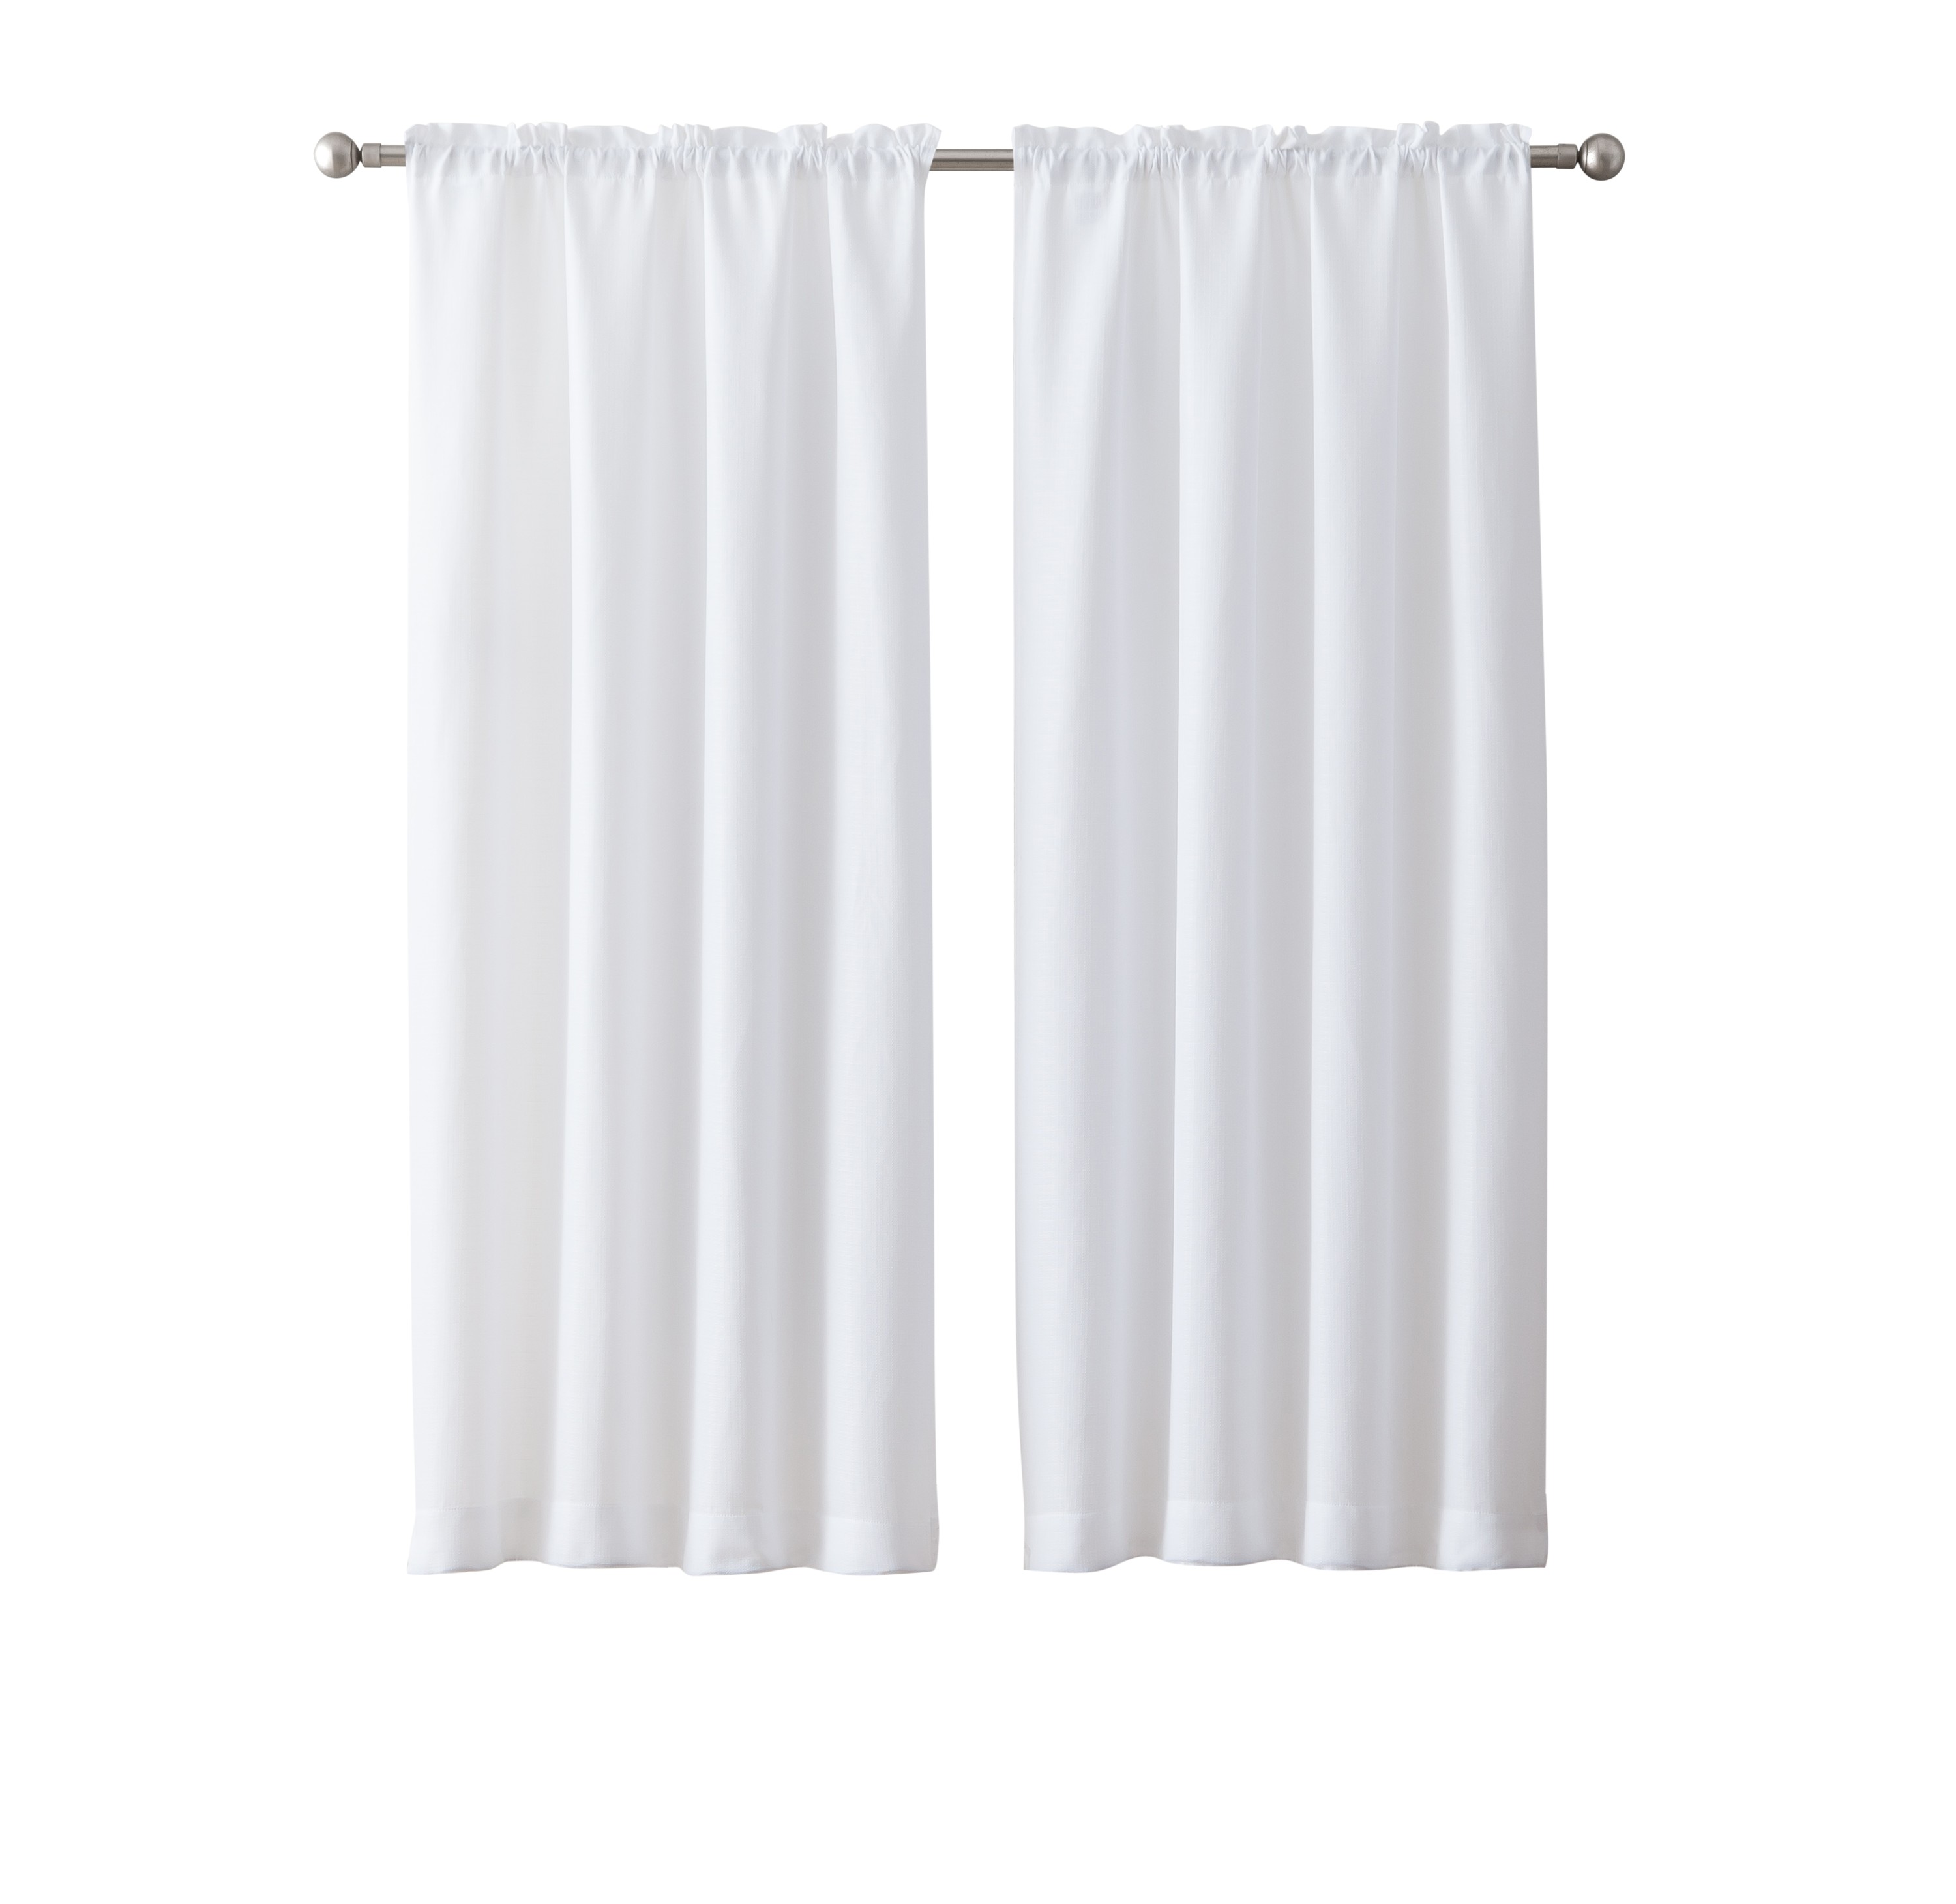 Mainstays Bennett Textured Curtain, White 63 inch, Set of (2) - Walmart.com